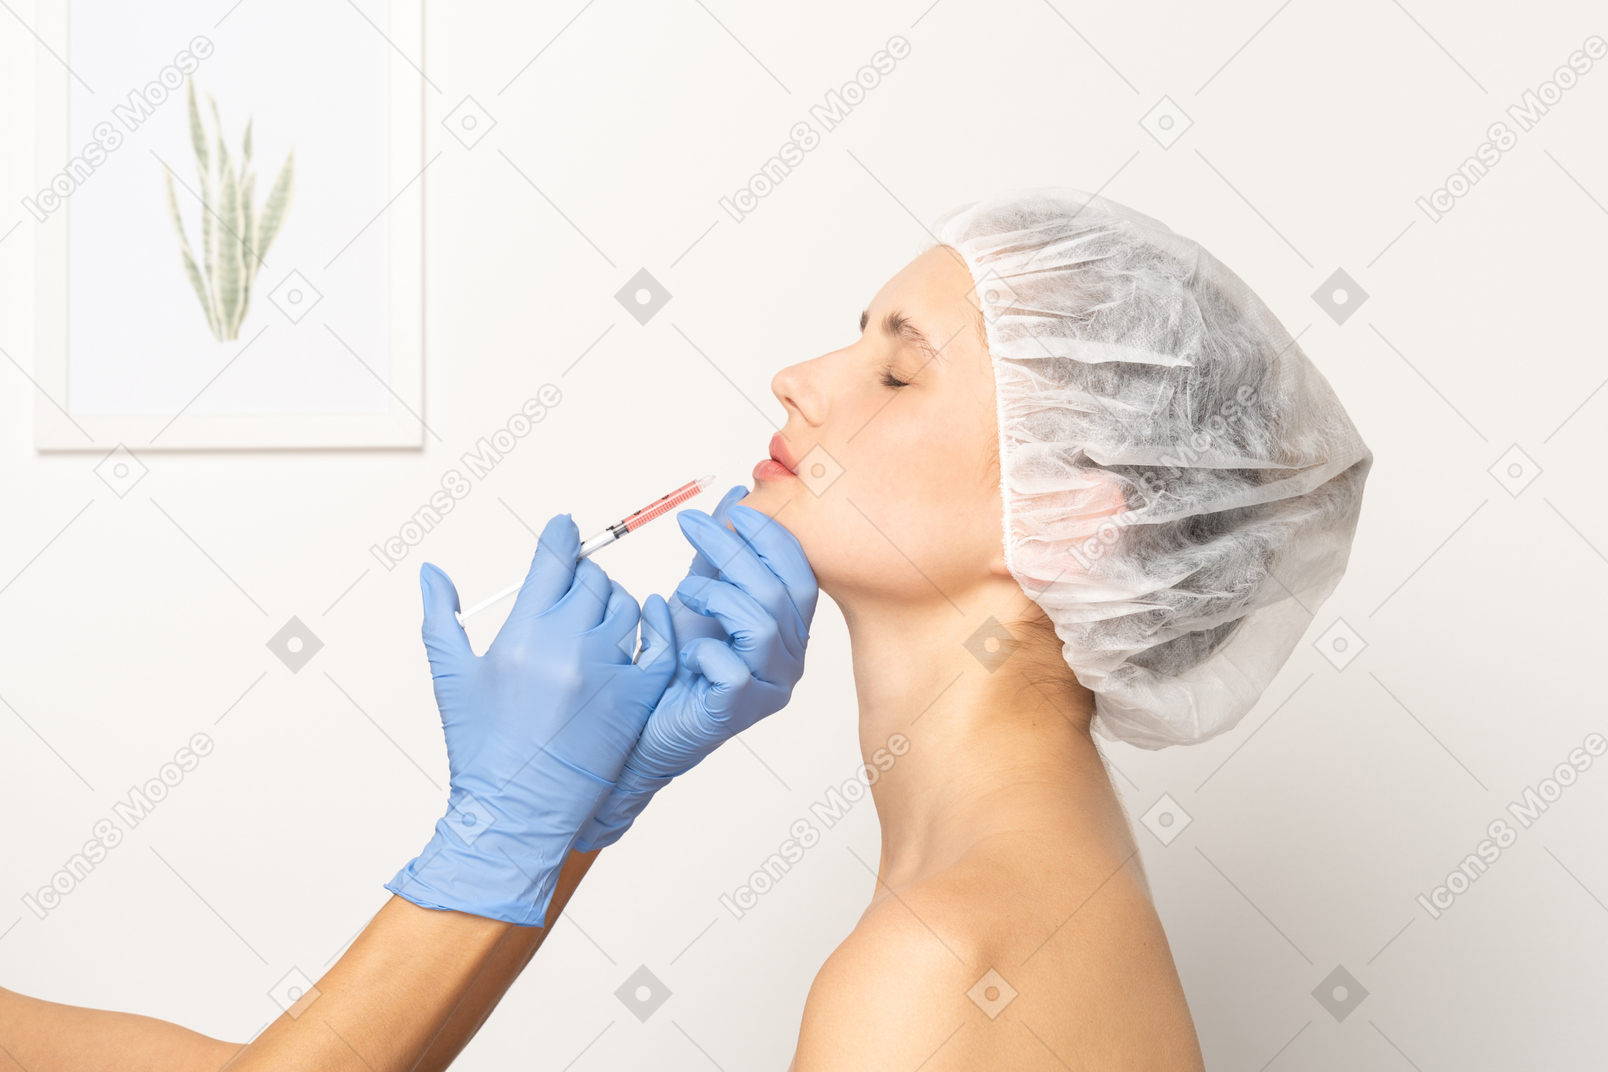 Vista lateral de una mujer que recibe una inyección de botox